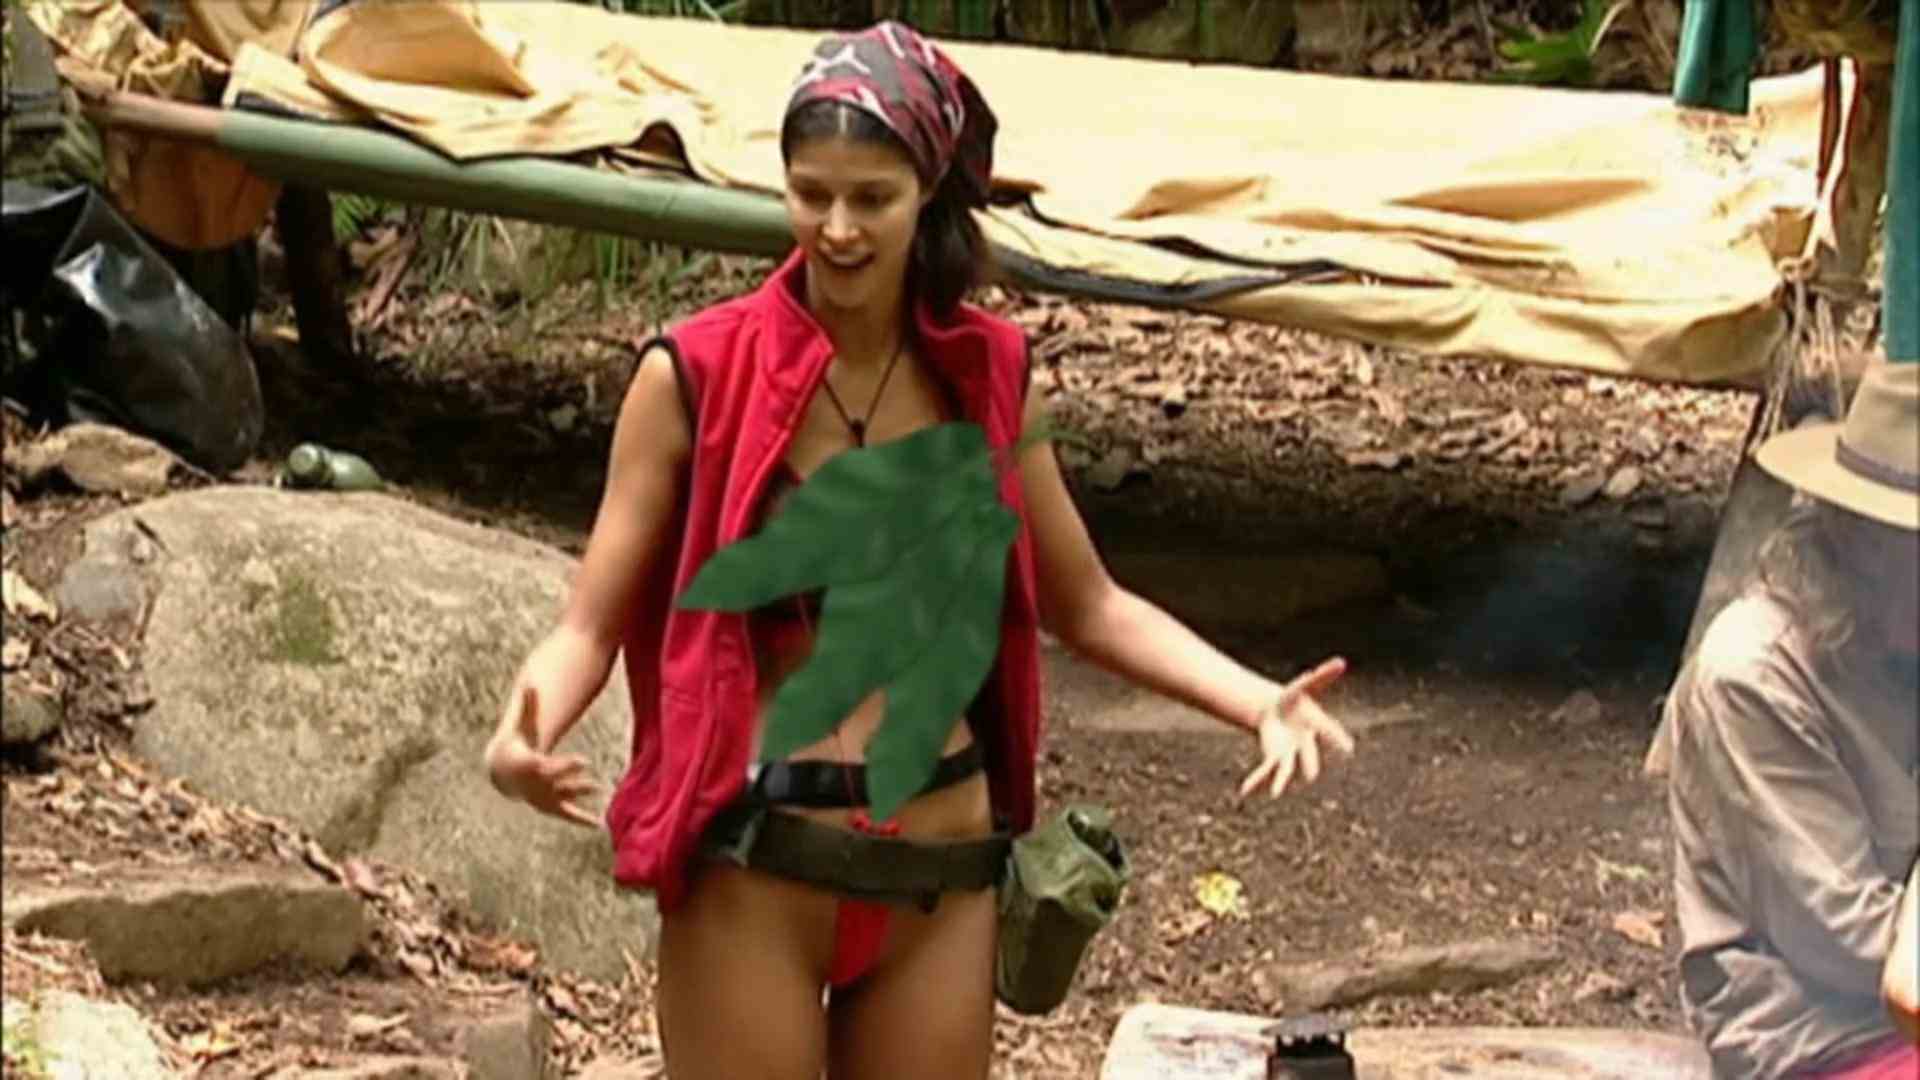 Micaela Schäfer in the Borat suit jungle camp 2012